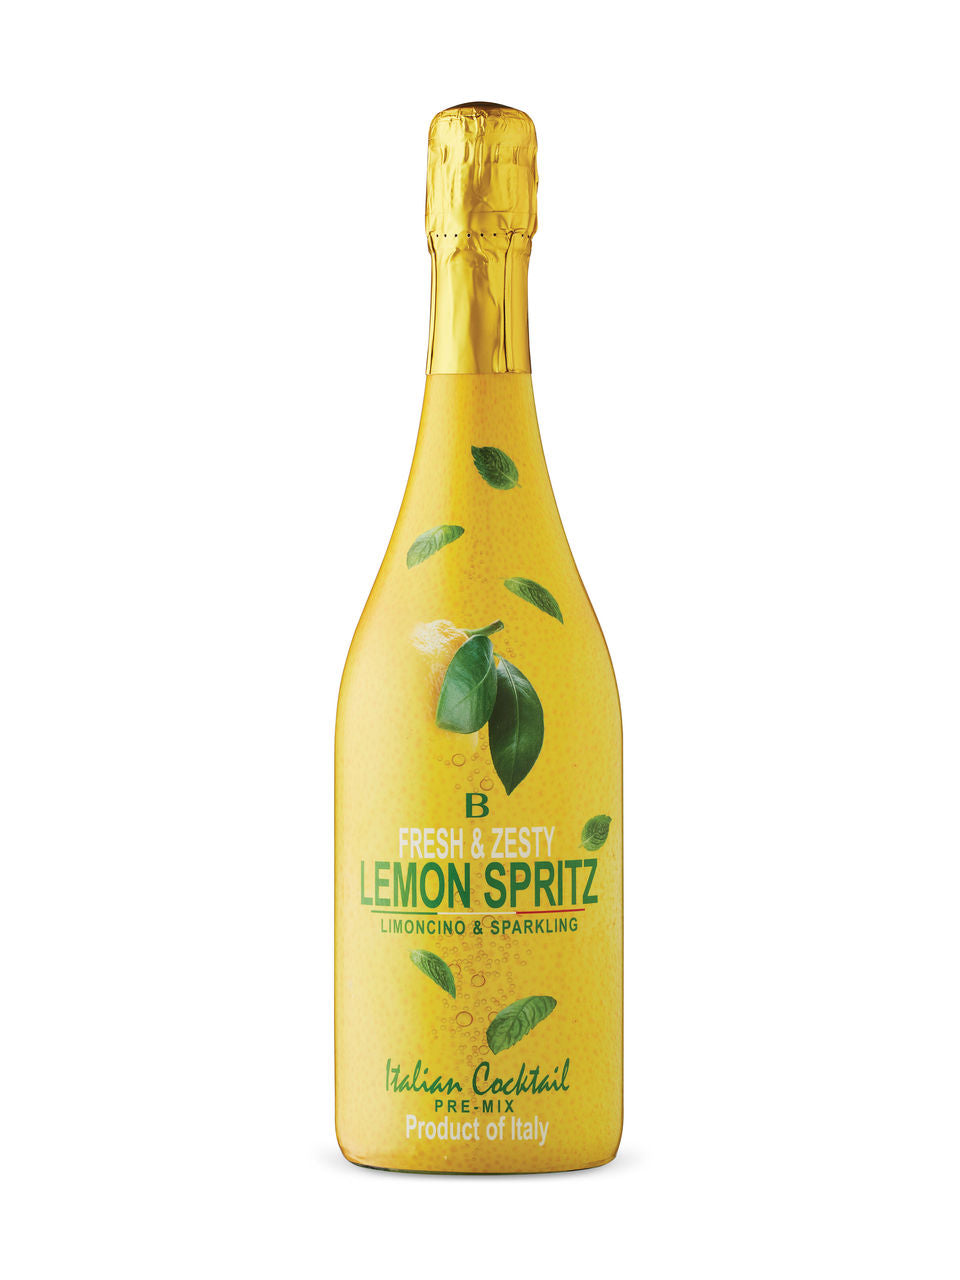 Bottega Lemon Spritz Veneto 750 ml bottle